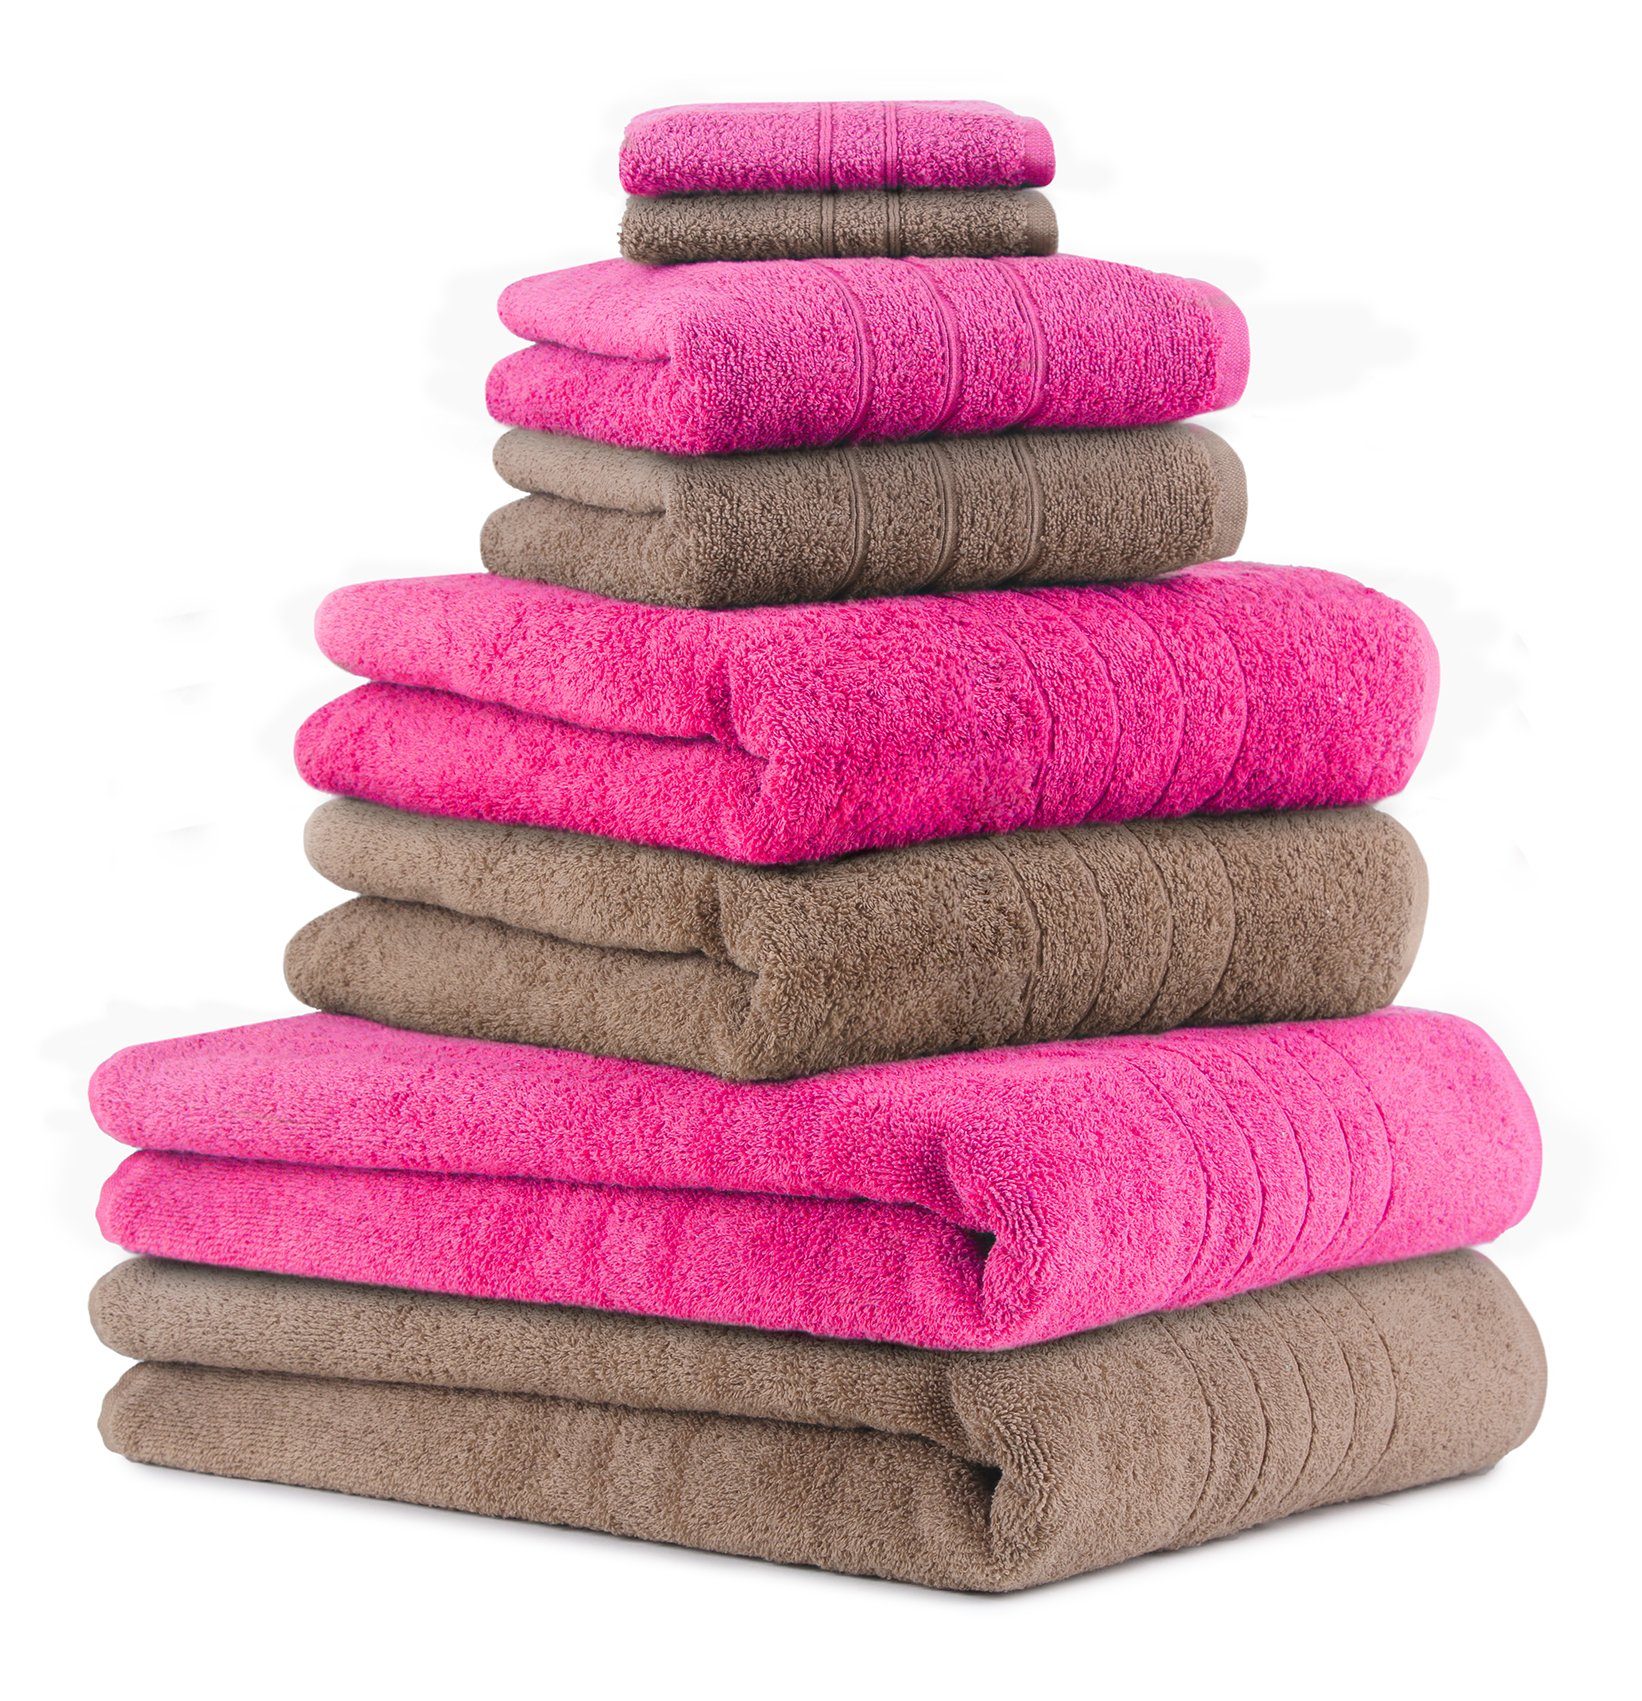 Betz Handtuch 2 Handtuch-Set 100% Badetücher (8-tlg) Baumwolle 8-TLG. Farbe Fuchsia, Duschtücher Baumwolle, 2 2 Handtücher Seiftücher 100% 2 Set und Mokka Deluxe